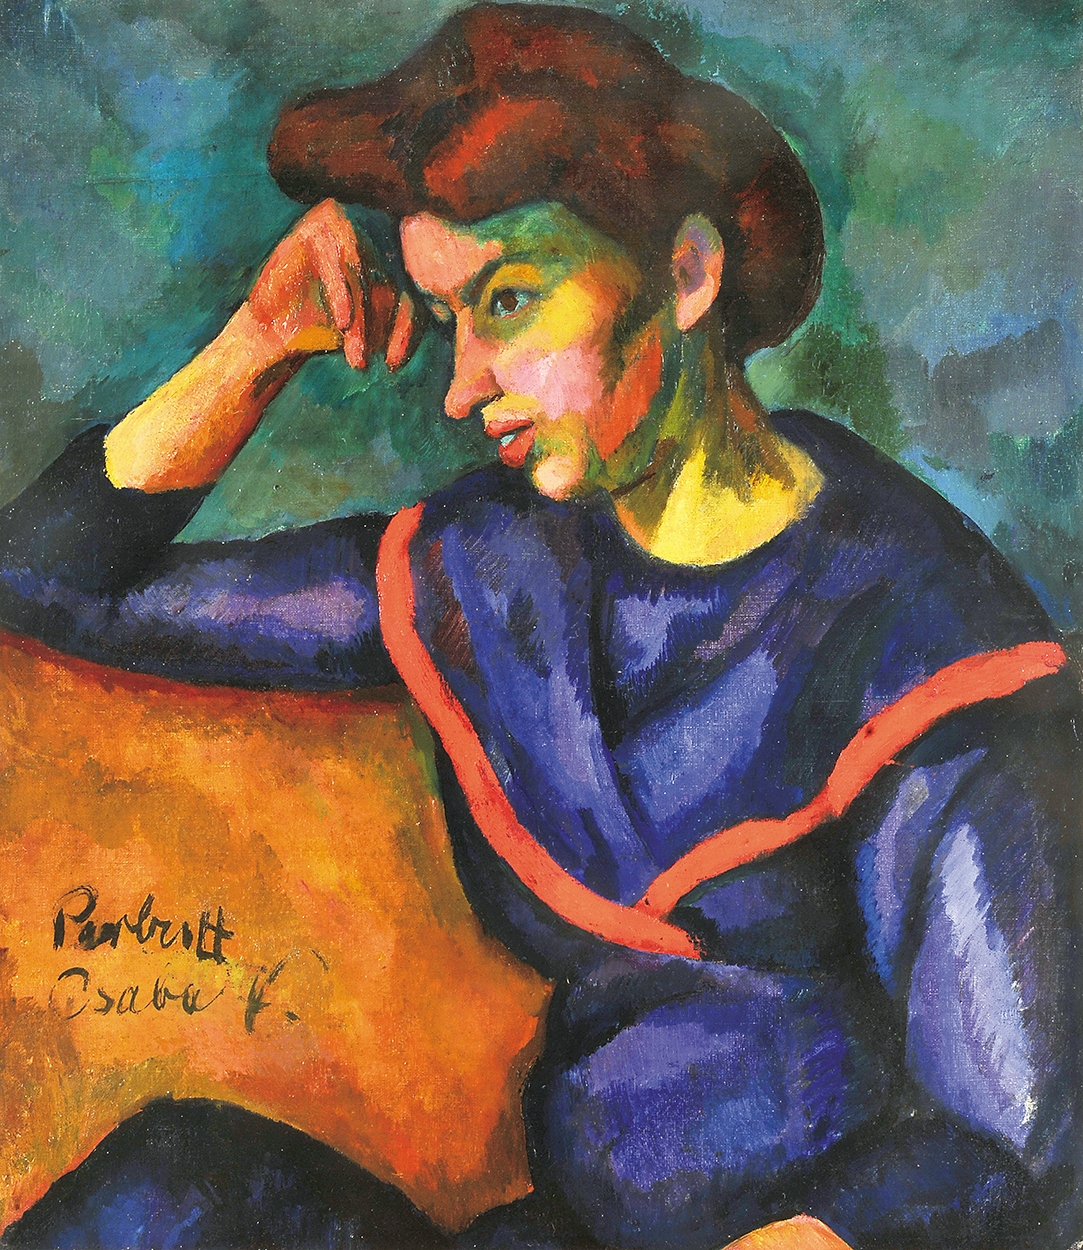 Perlrott-Csaba Vilmos (1880-1955) Vörös hajú nő, 1909 körül